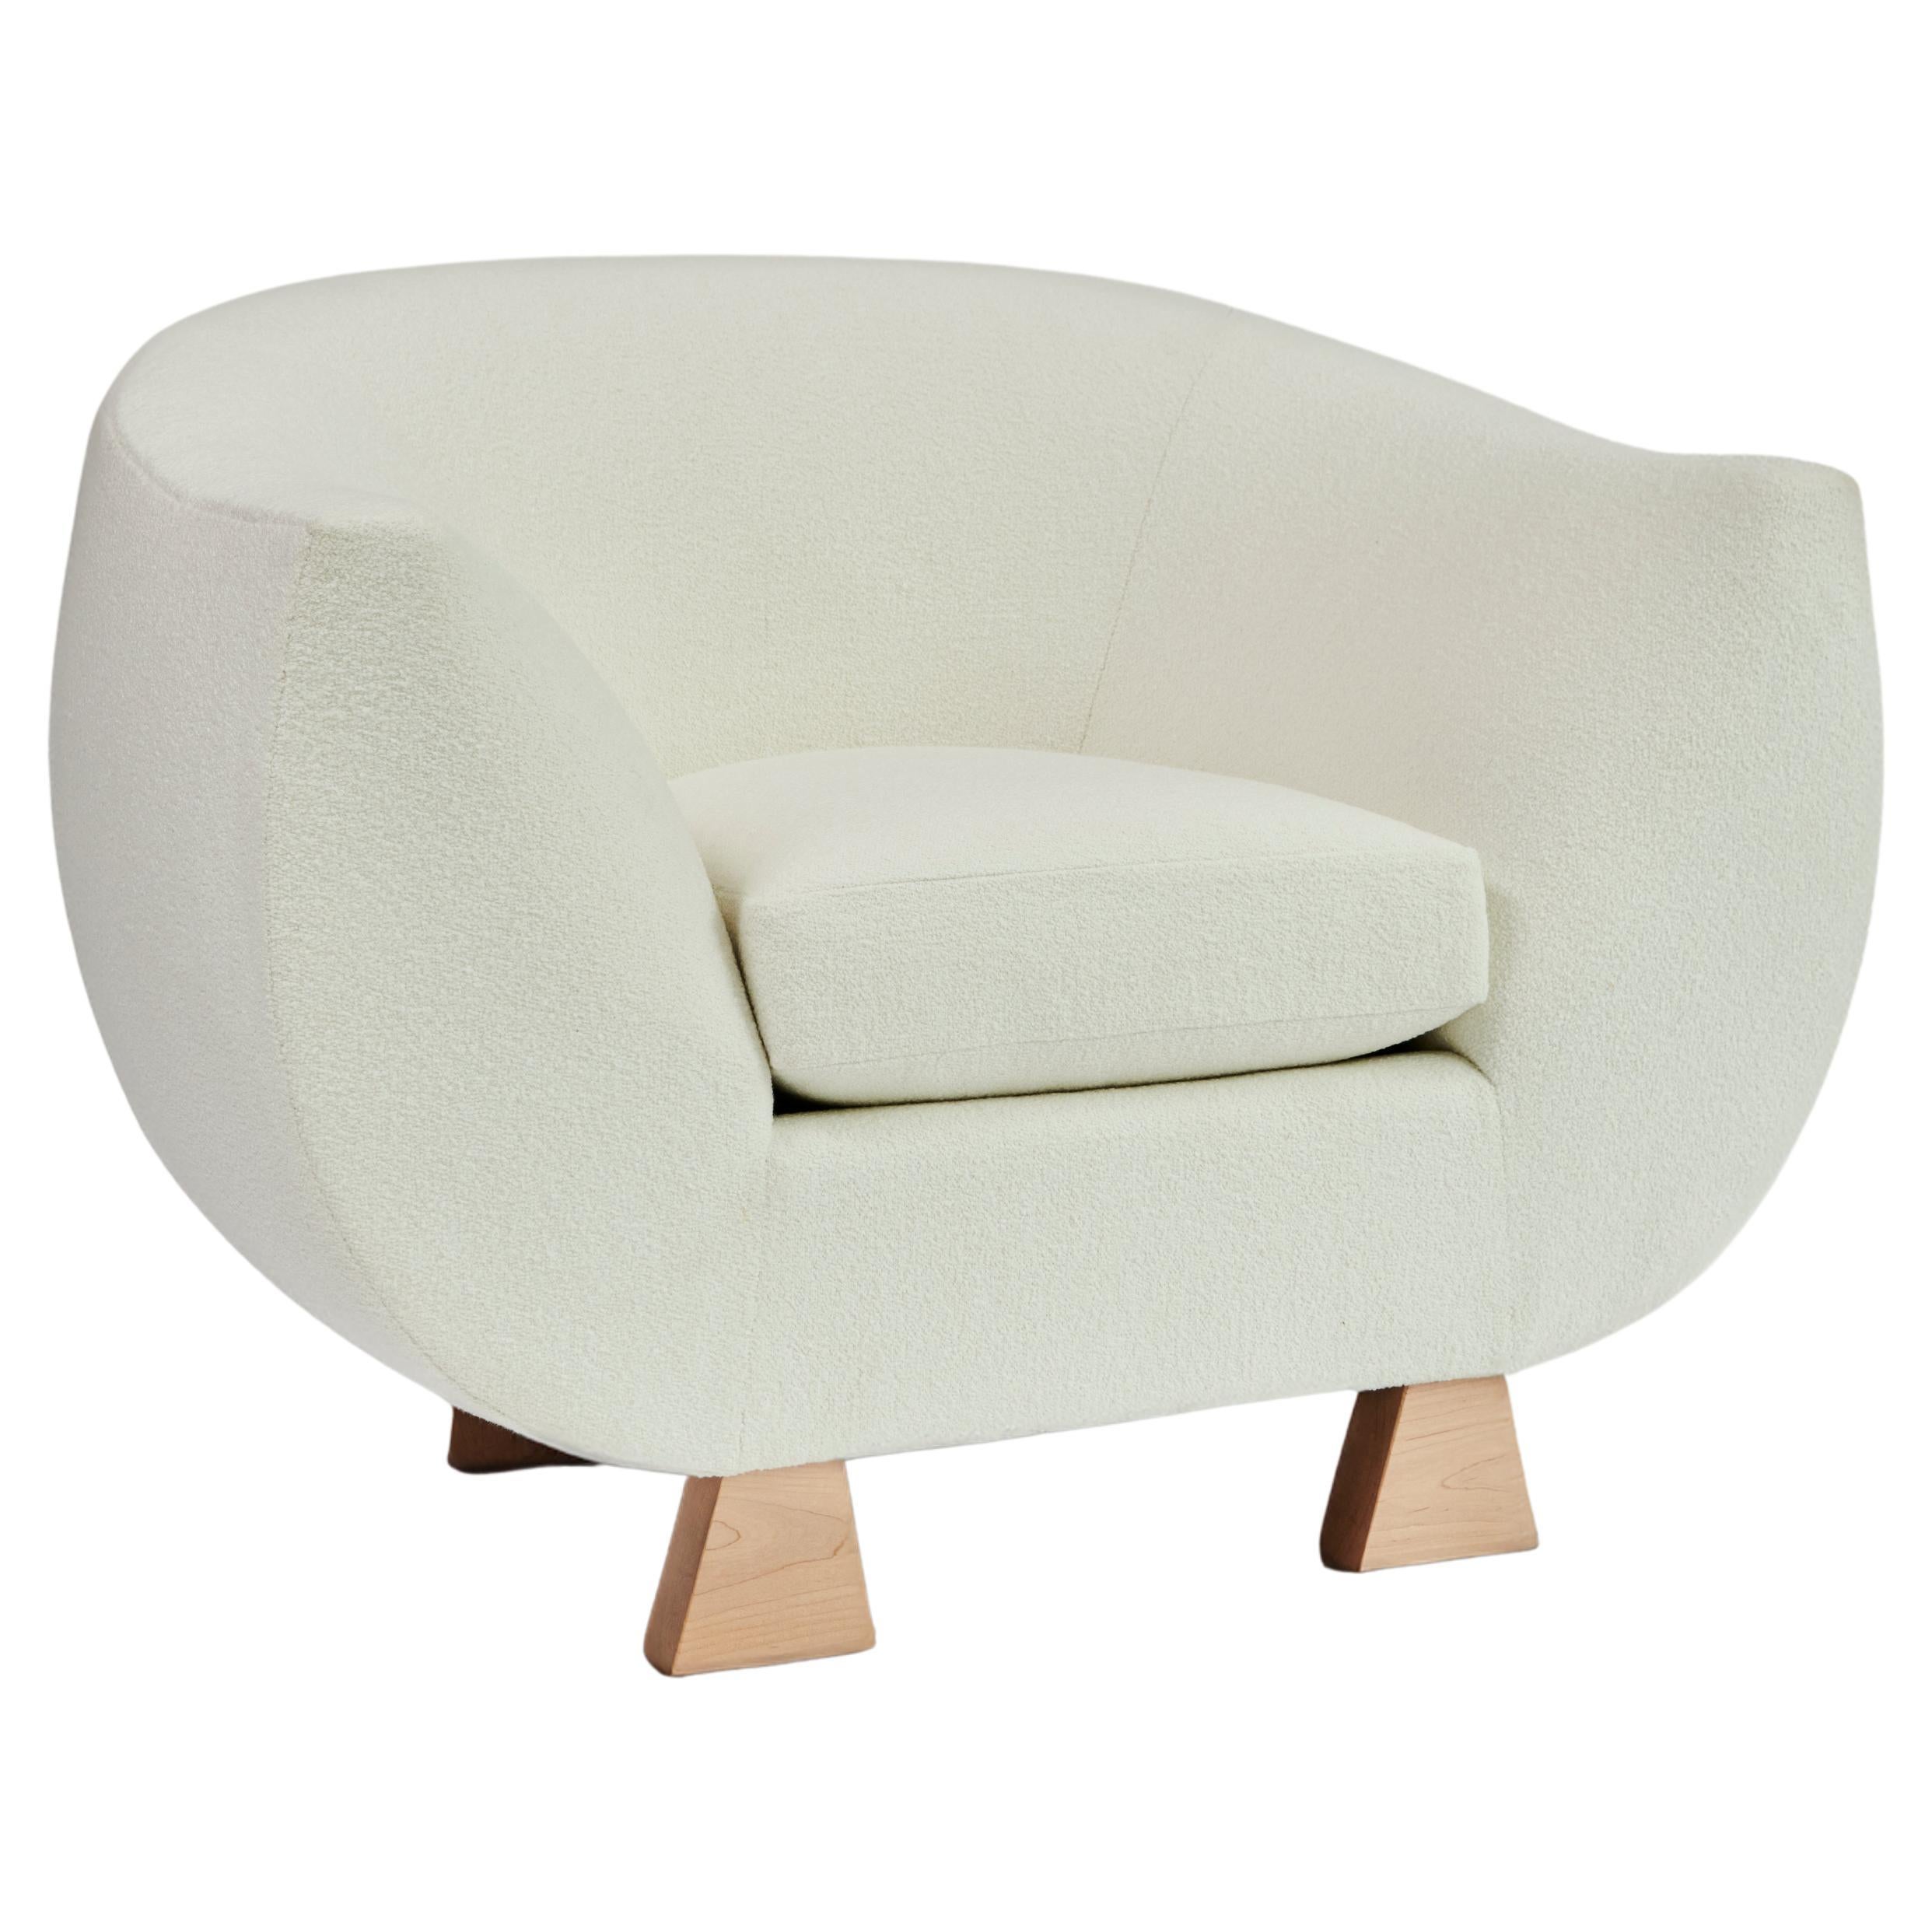 Layton Club Chair, chaise en bouclé ivoire et érable par Christian Siriano